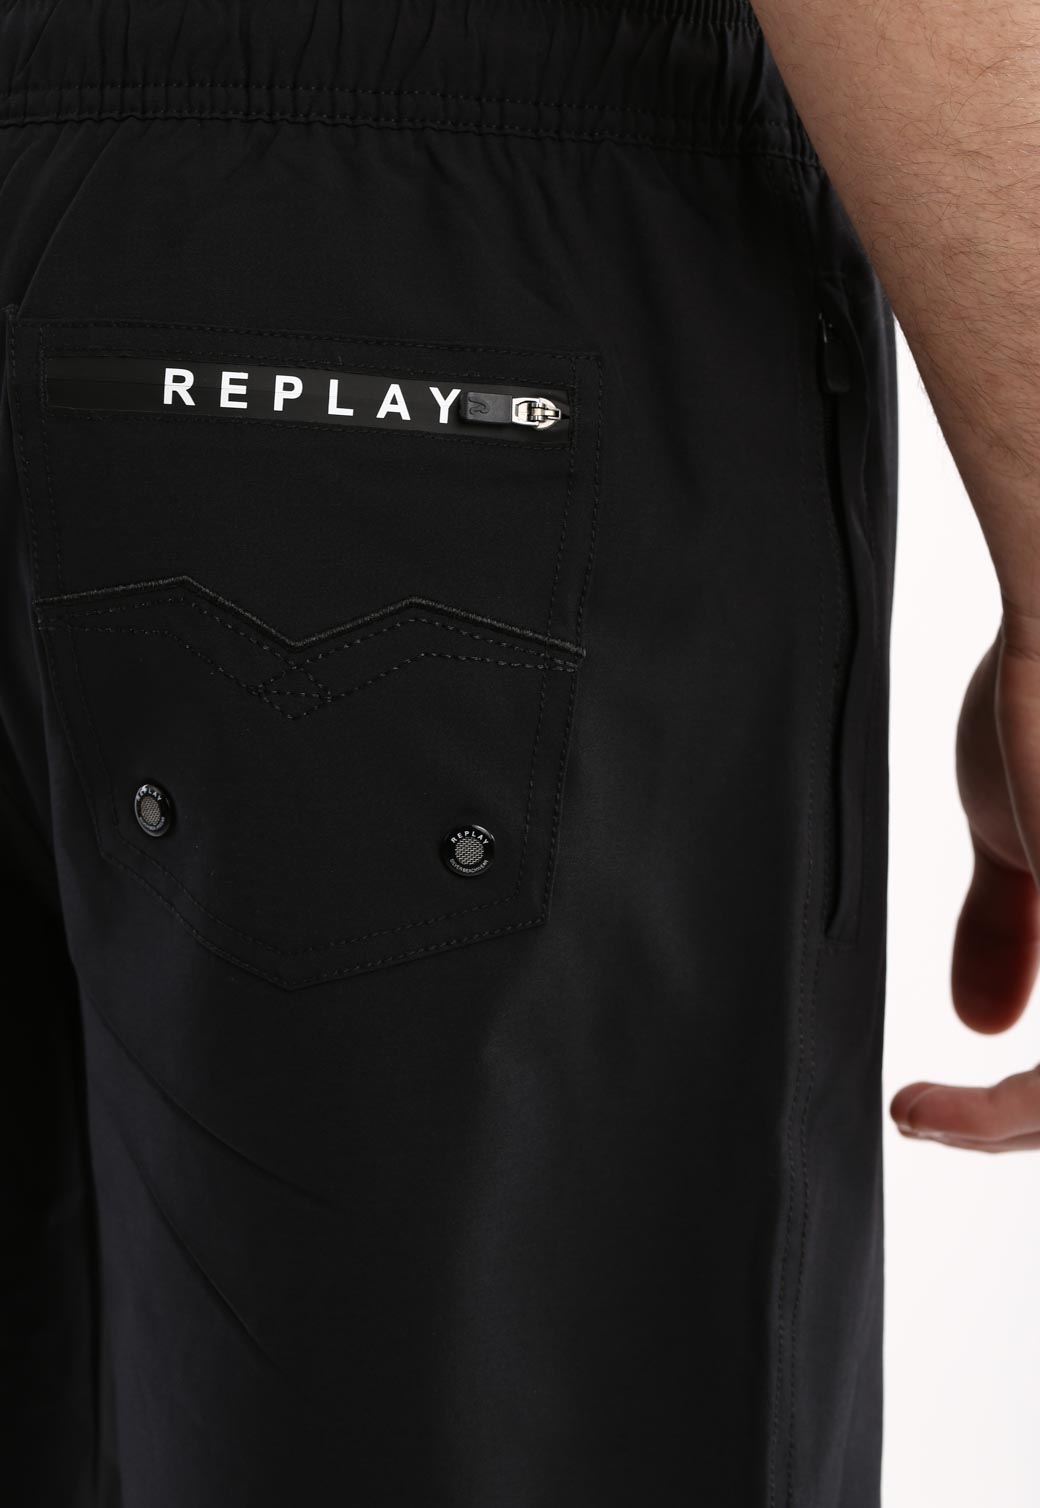 בגד ים לוגו גדול צד שמאל לוגו קטן מאחורה גברים - Replay